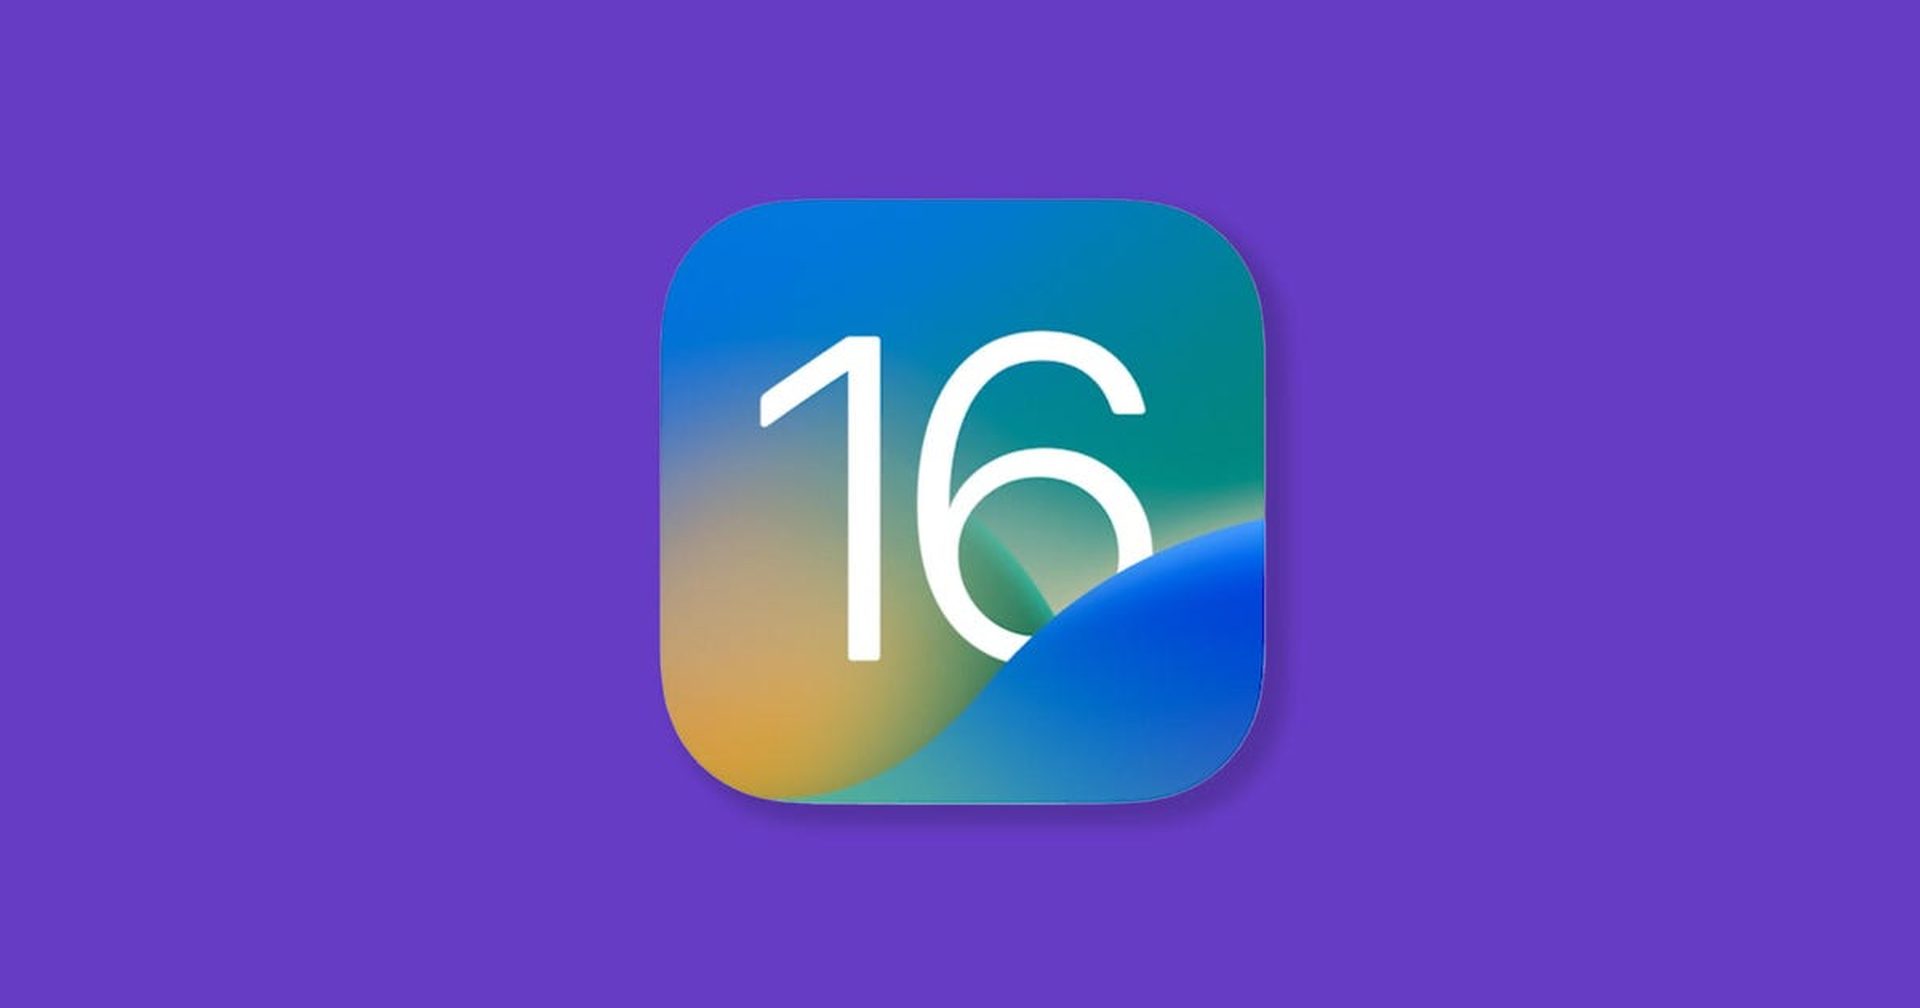 iOS 16 mobildata virker ikke: Hvordan løser man det?